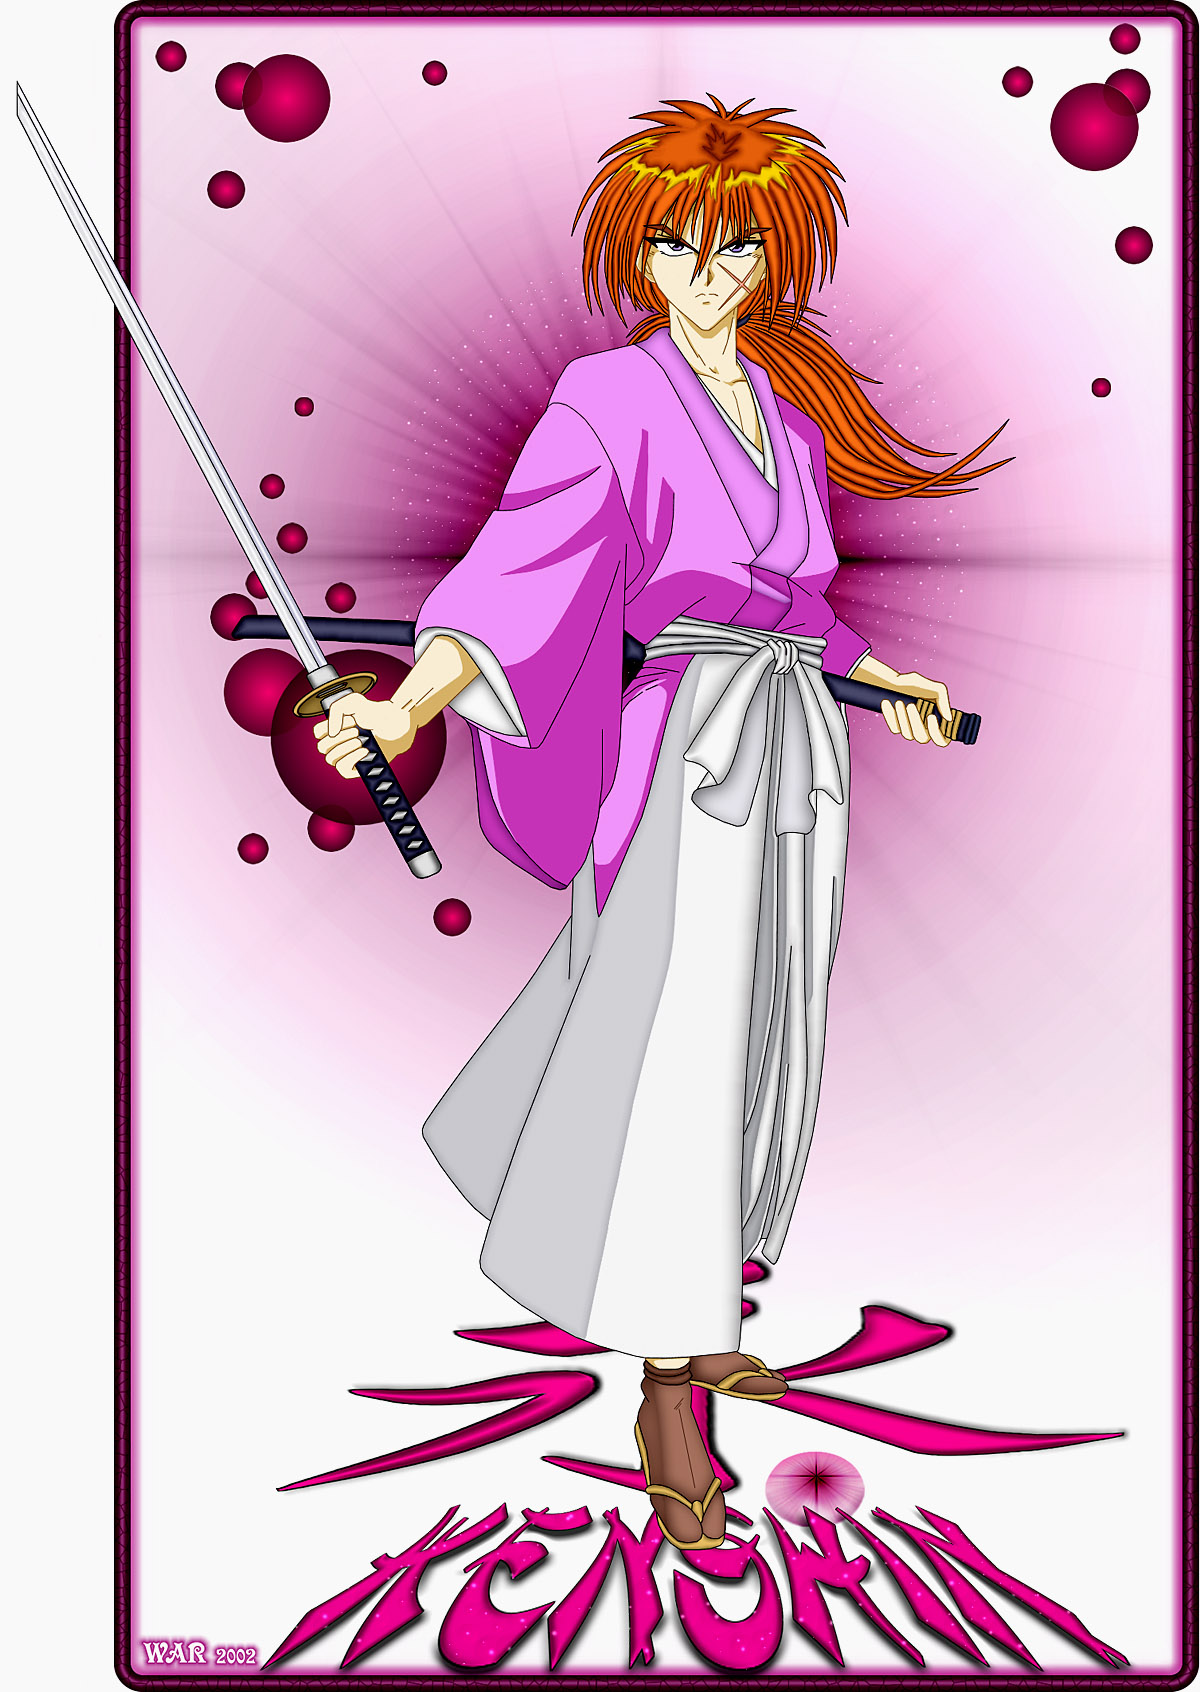 Kenshin
By W.A.R.
Keywords: W.A.R. Rurouni Kenshin fanart